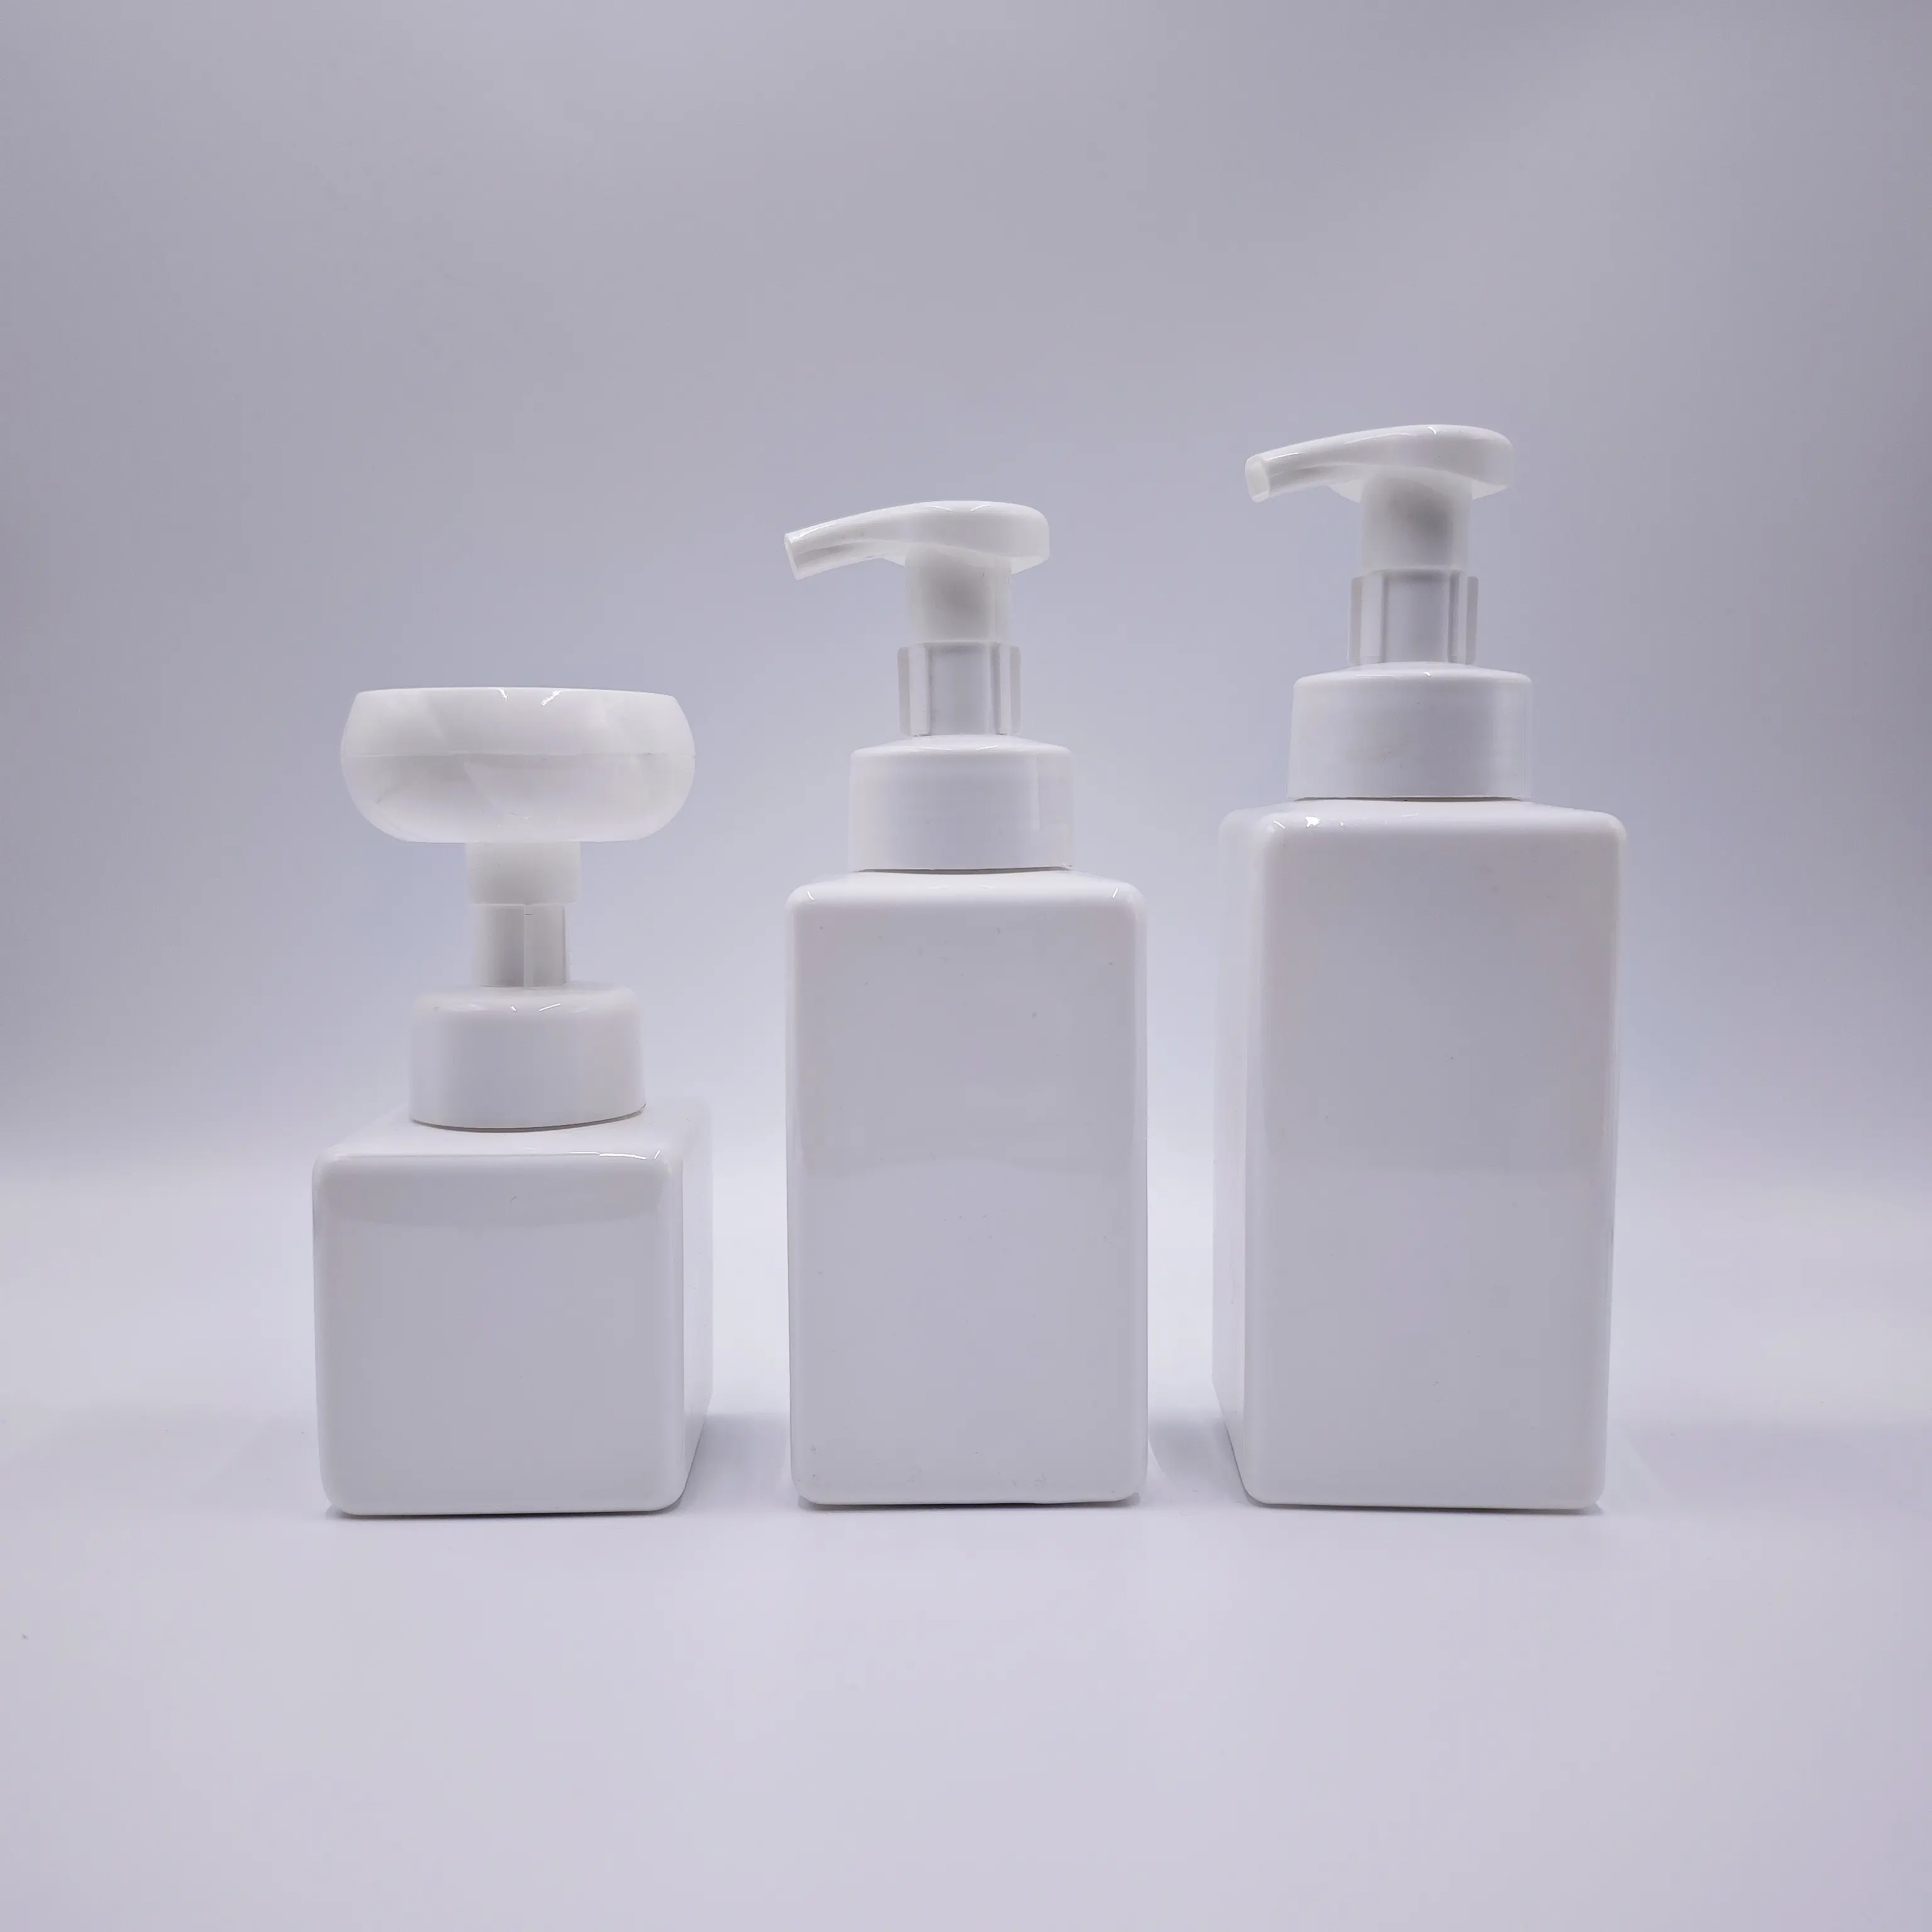 Botellas de plástico para lavado de manos, dispensador de jabón líquido desinfectante, limpiador de flores, botellas con bomba de espuma